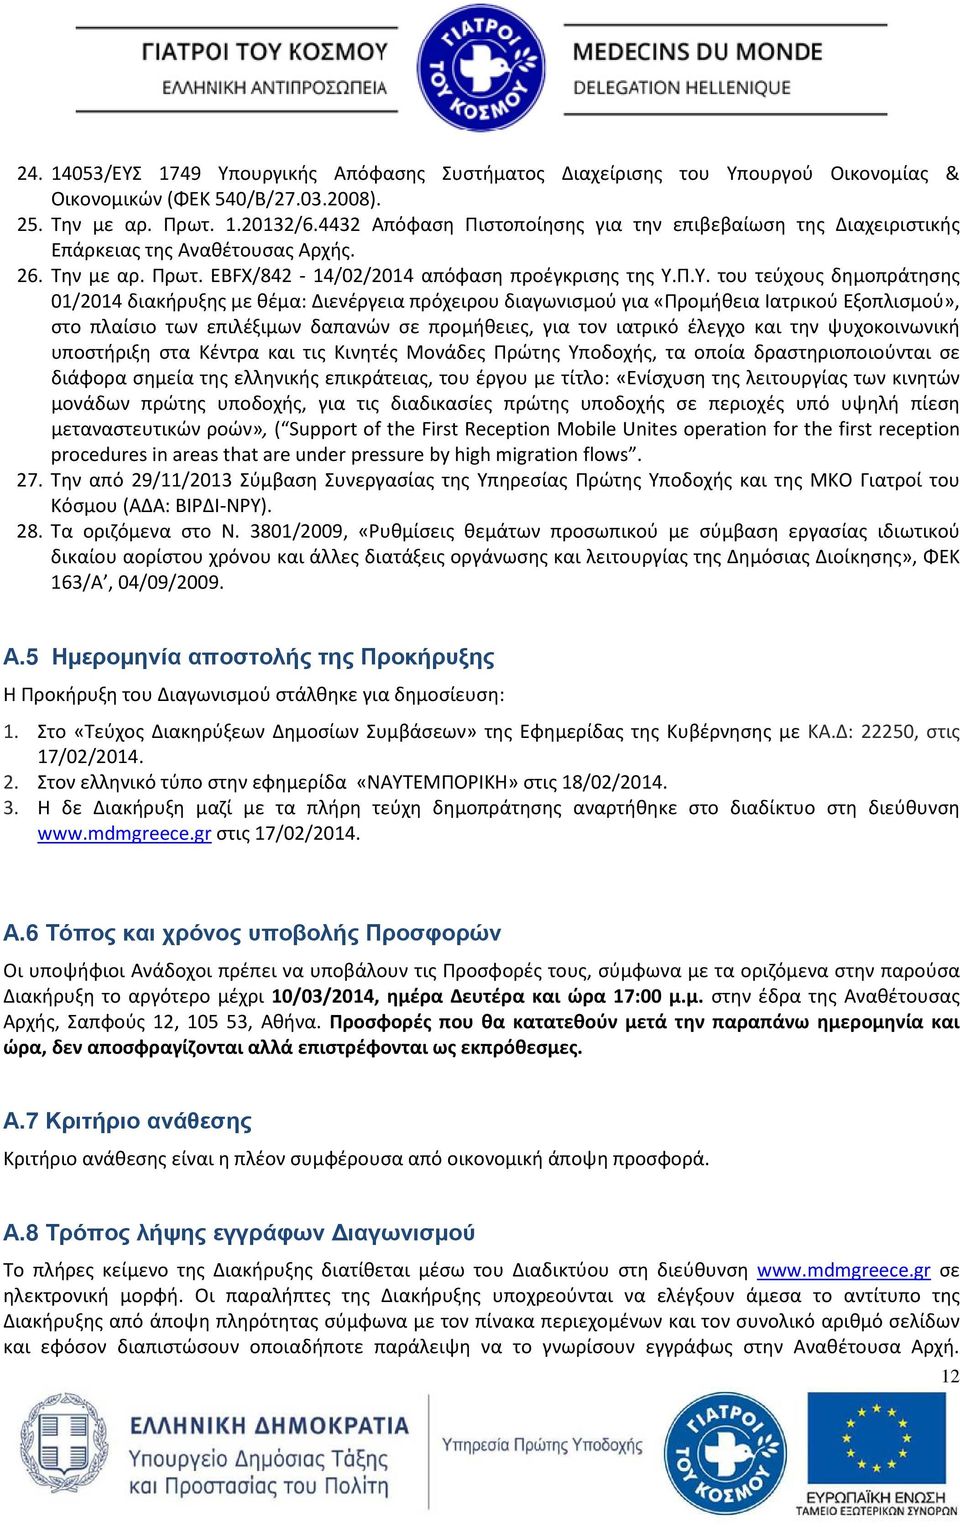 Π.Υ. του τεύχους δημοπράτησης 01/2014 διακήρυξης με θέμα: Διενέργεια πρόχειρου διαγωνισμού για «Προμήθεια Ιατρικού Εξοπλισμού», στο πλαίσιο των επιλέξιμων δαπανών σε προμήθειες, για τον ιατρικό